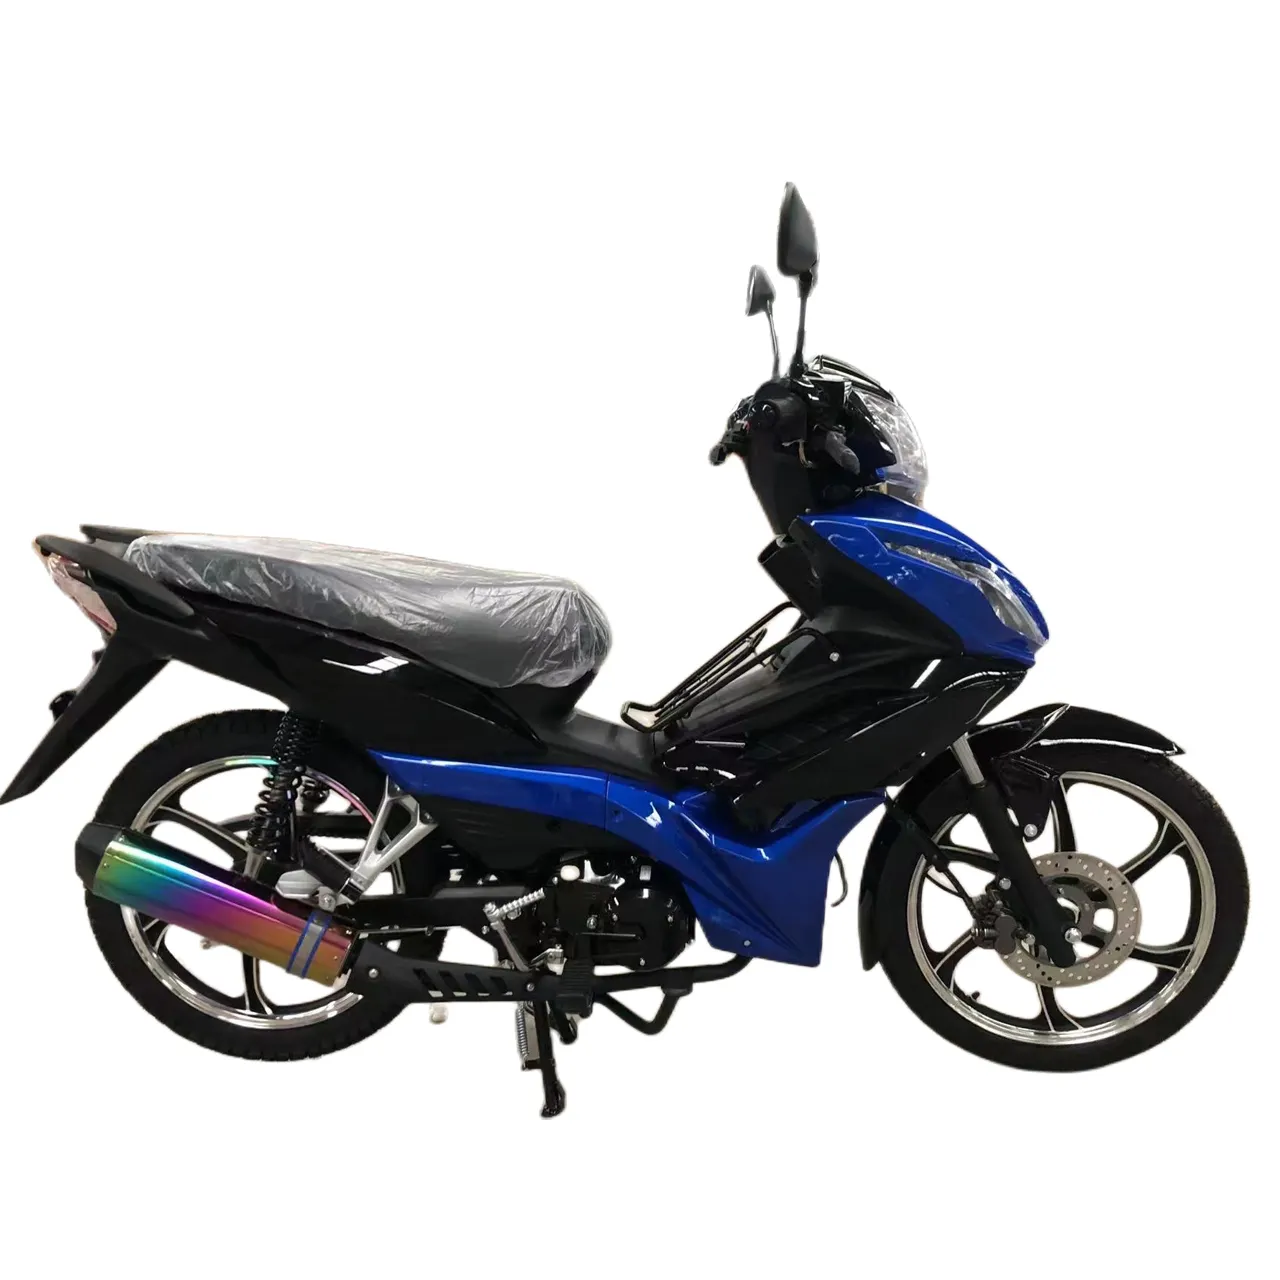 למעלה איכות פופולרי 120cc קאב אופני אופקי 4 שבץ מנוע אוויר מקורר אופני 92 בנזין אופנוע גור